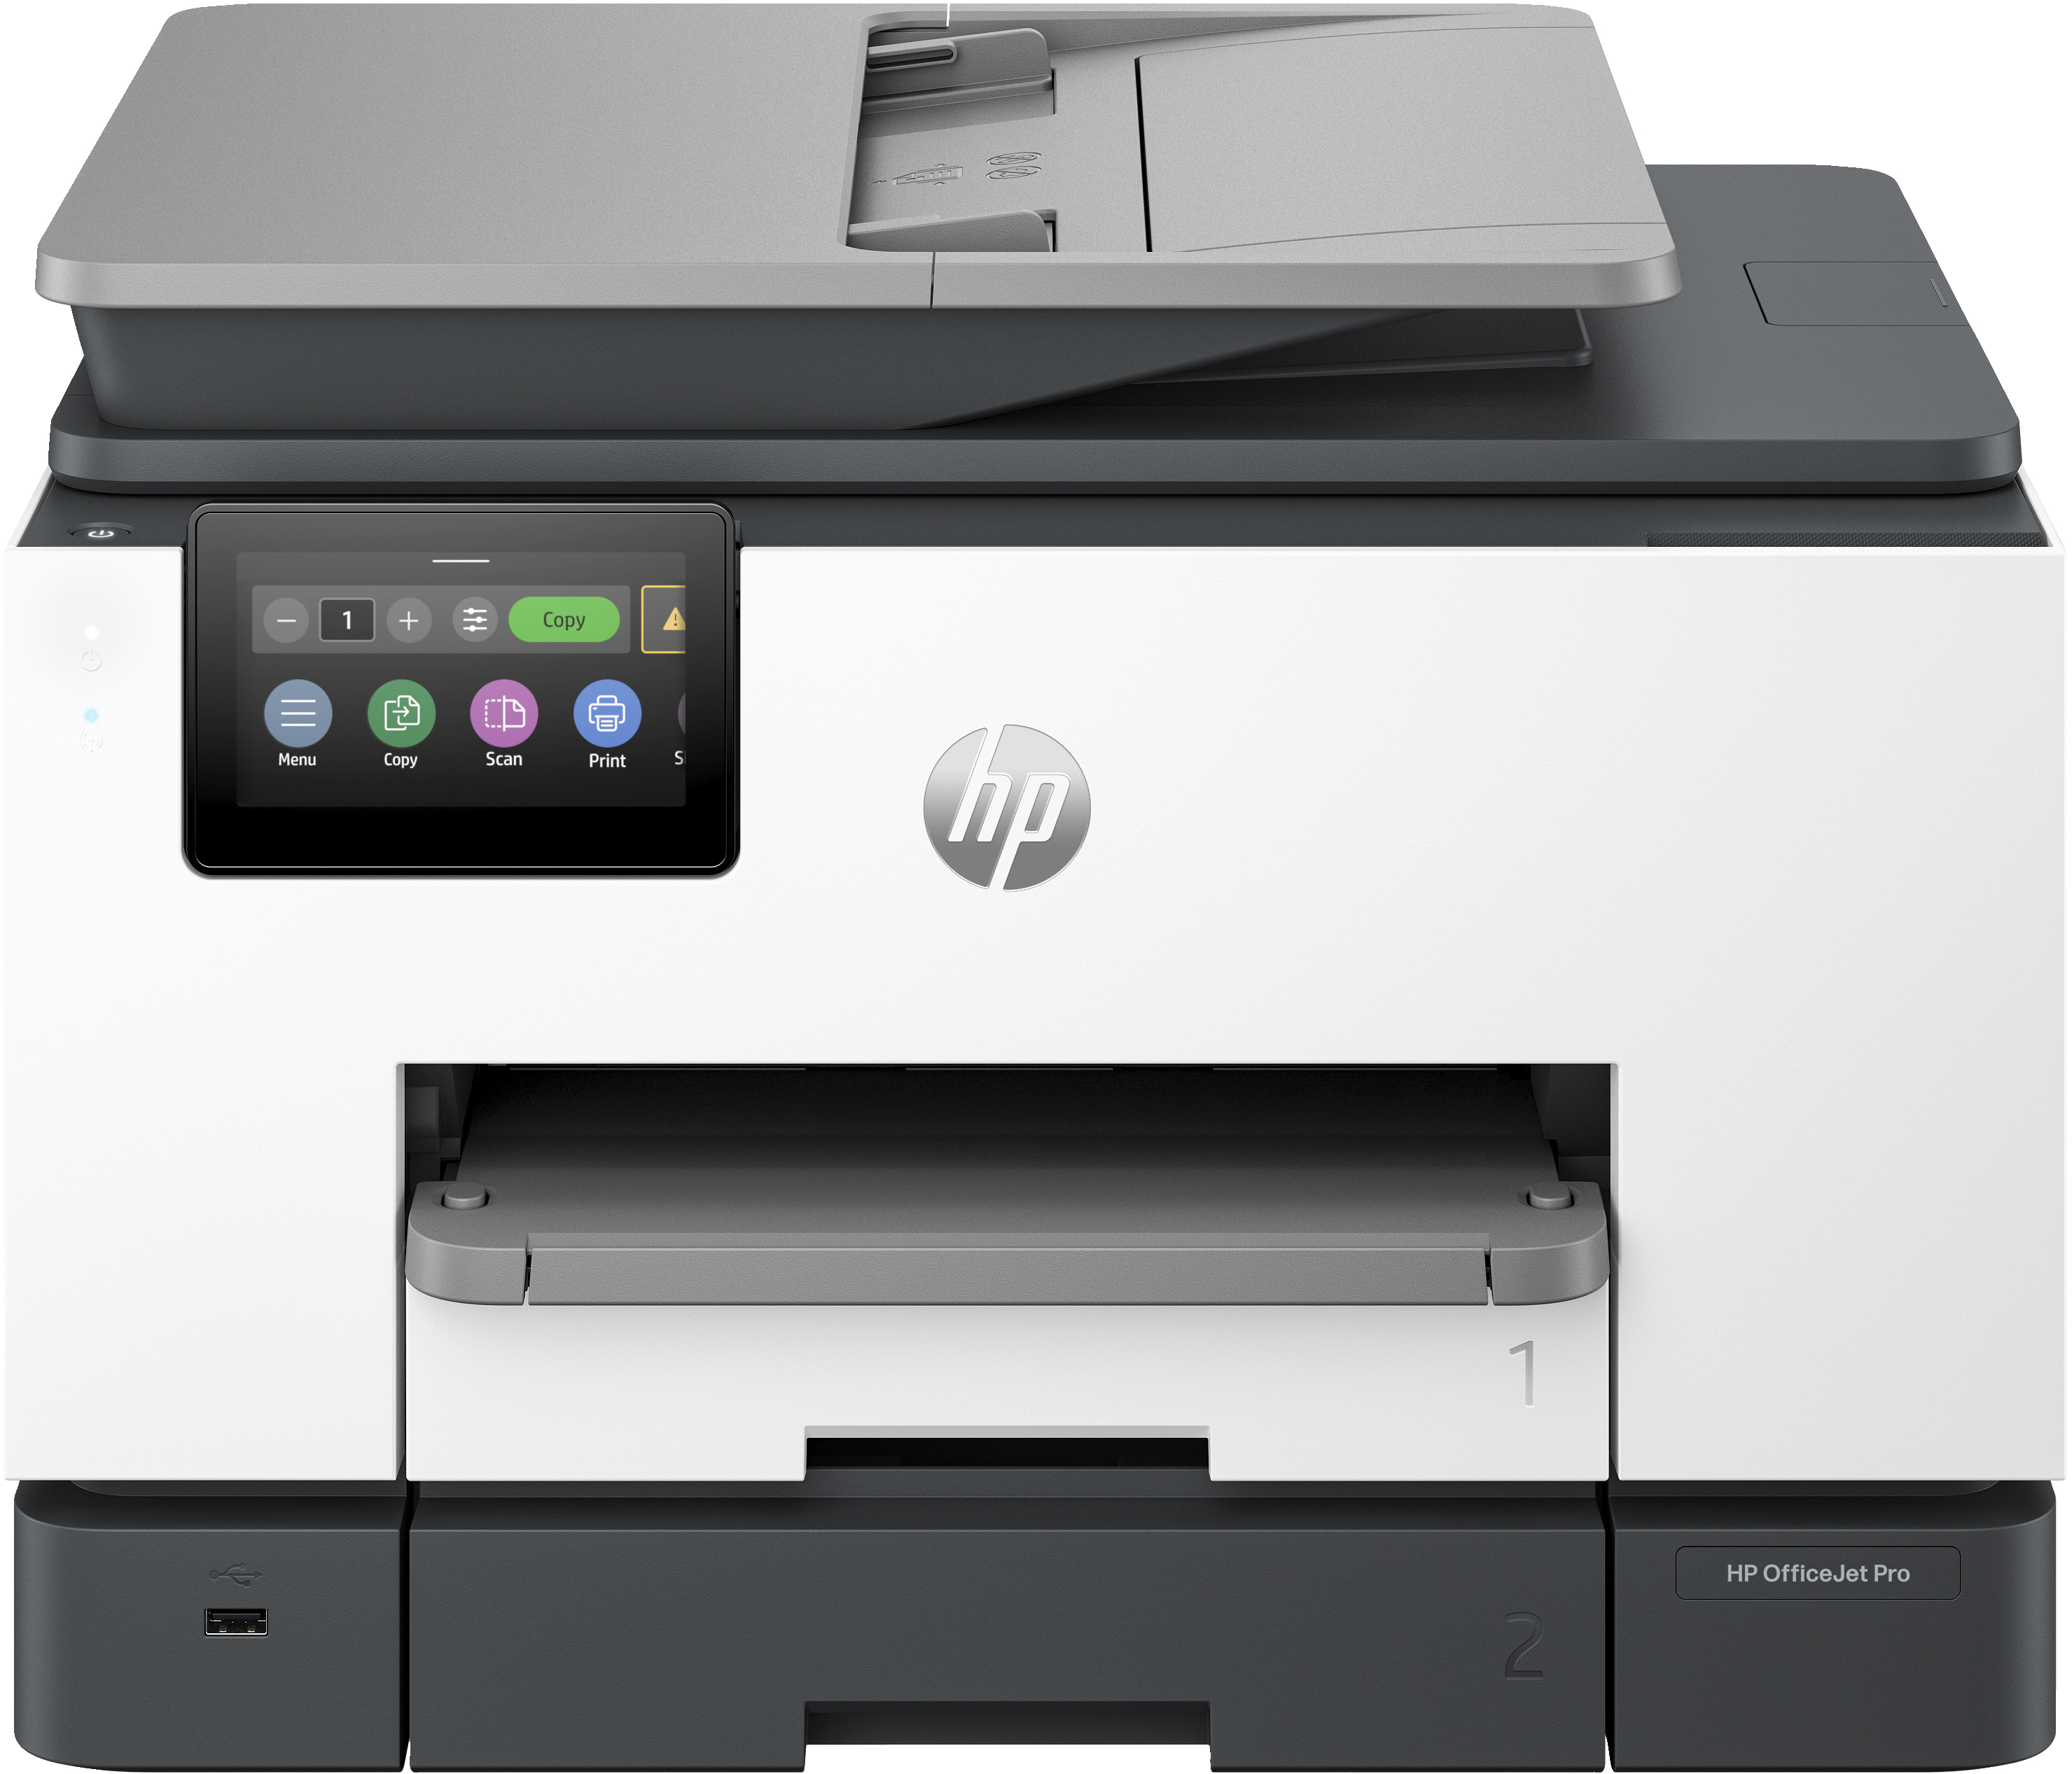 Image of HP OfficeJet Pro Stampante multifunzione HP 9132e, Colore, Stampante per Piccole e medie imprese, Stampa, copia, scansione, fax, wireless; HP+; idonea a HP Instant Ink; Stampa fronte/retro; scansione fronte/retro; alimentatore automatico di documenti; fax